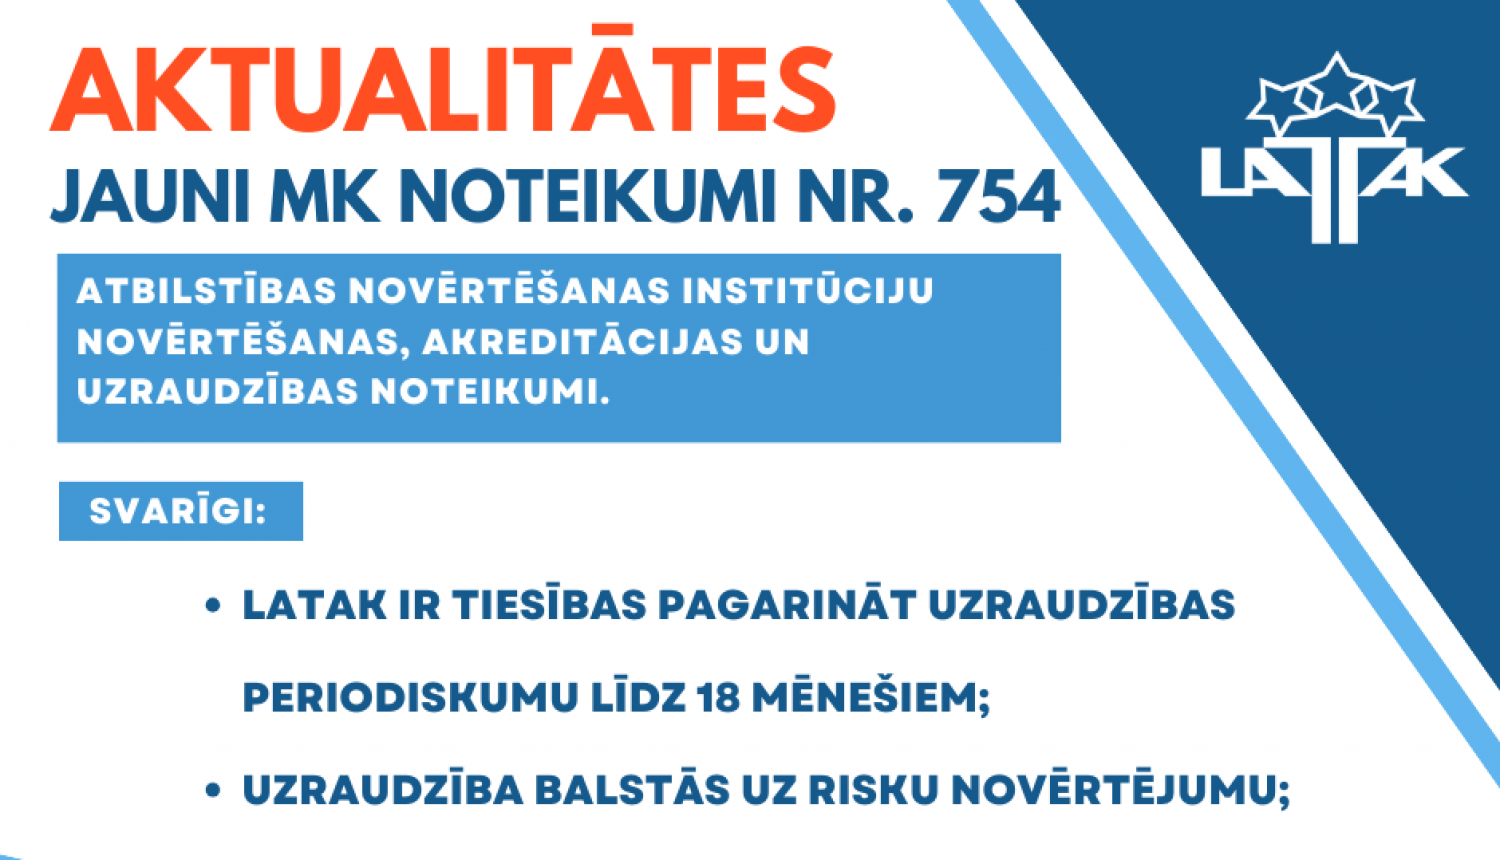 Teksts par aktualitātēm jaunajos noteikumos Nr.754. Balts fons, zili burti un LATAK logo